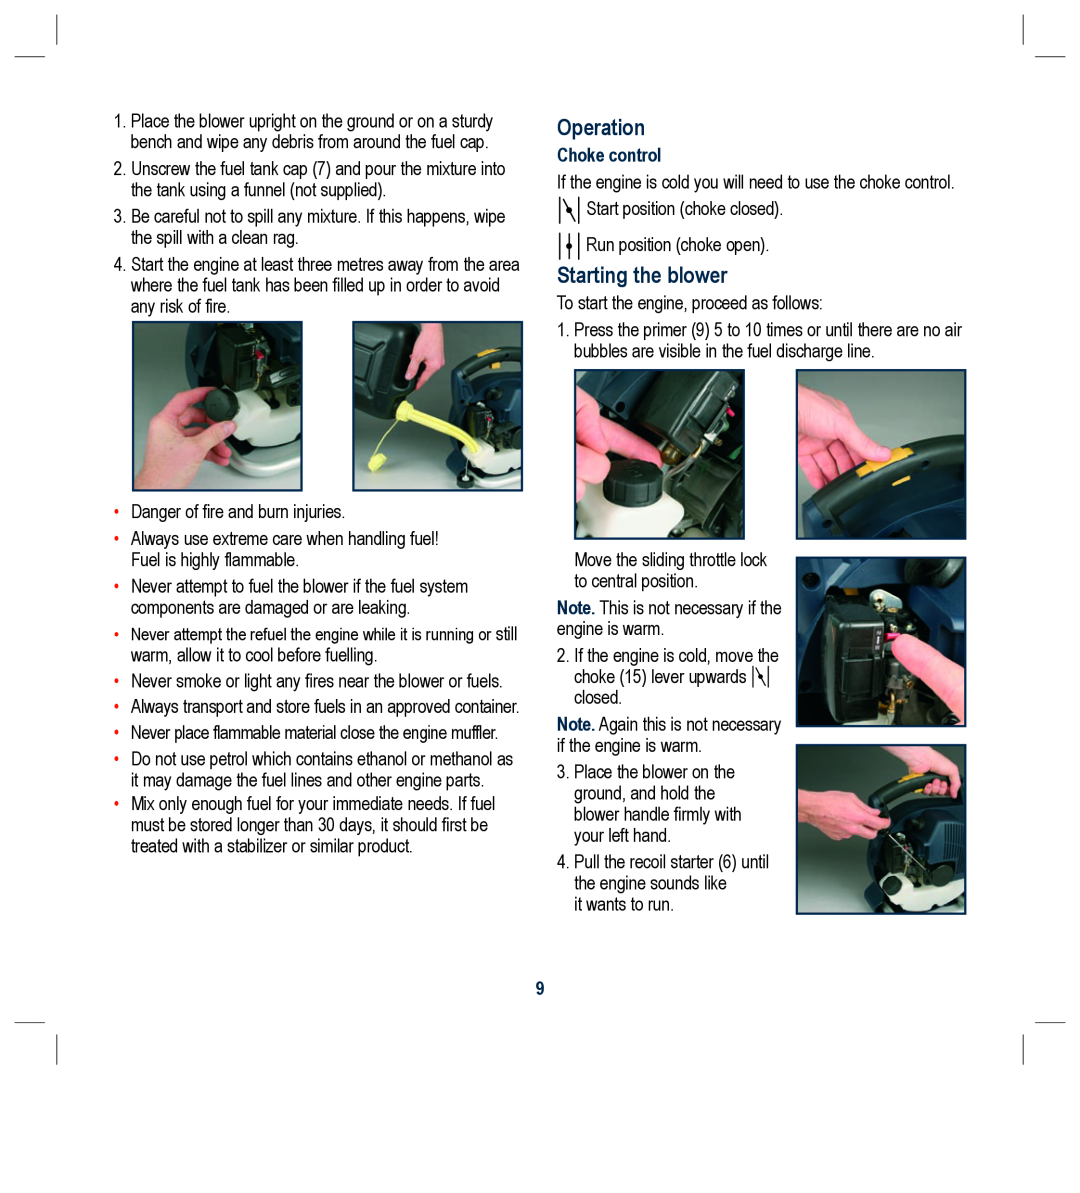 Global Machinery Company PB26CC instruction manual Operation, Starting the blower, Choke control 